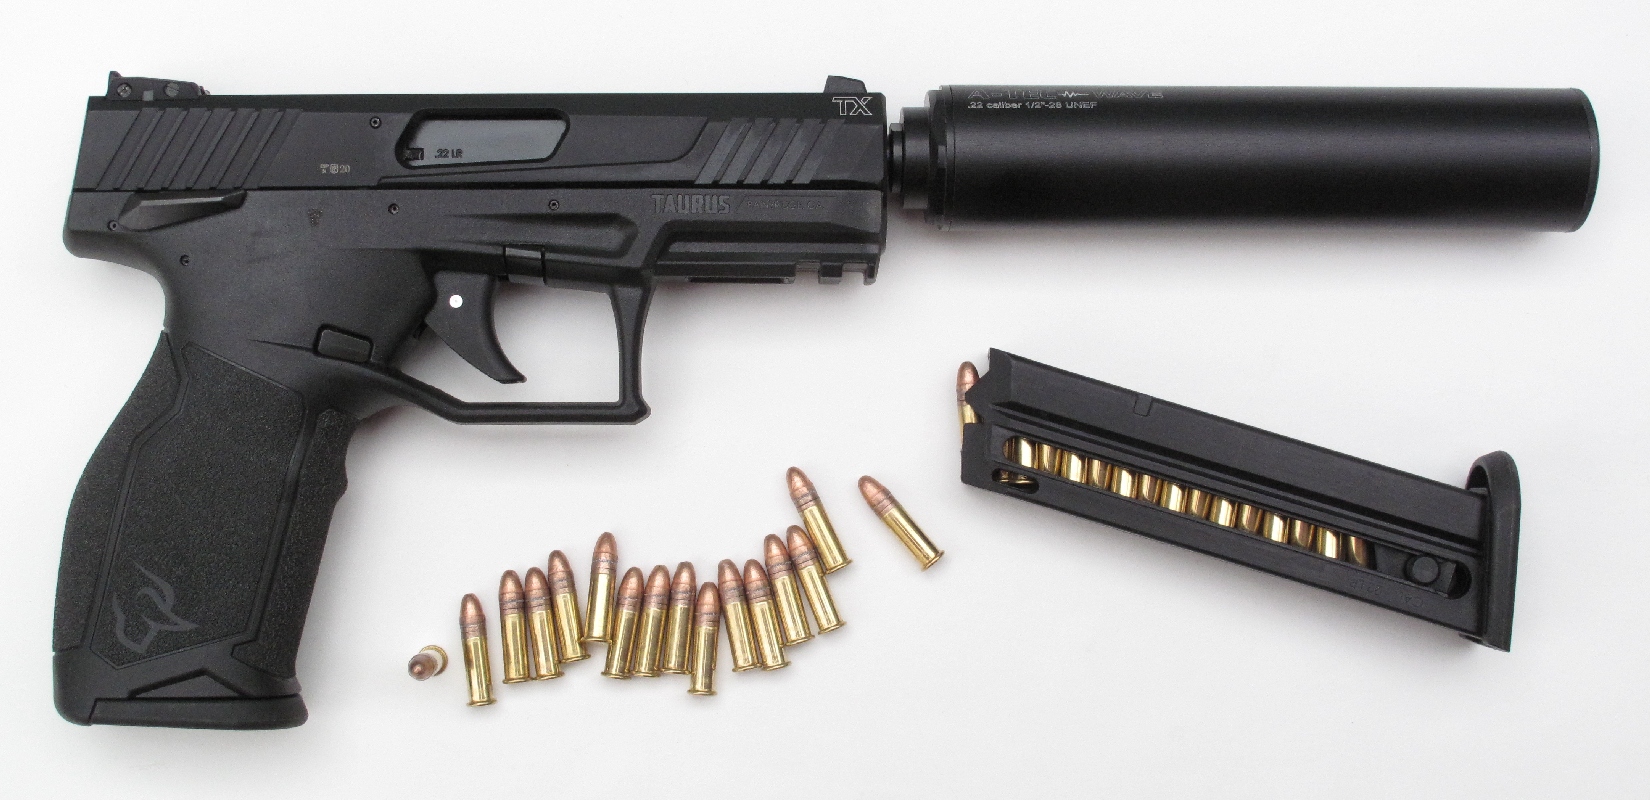 Pistolet Taurus modèle TX 22 de calibre .22 Long Rifle